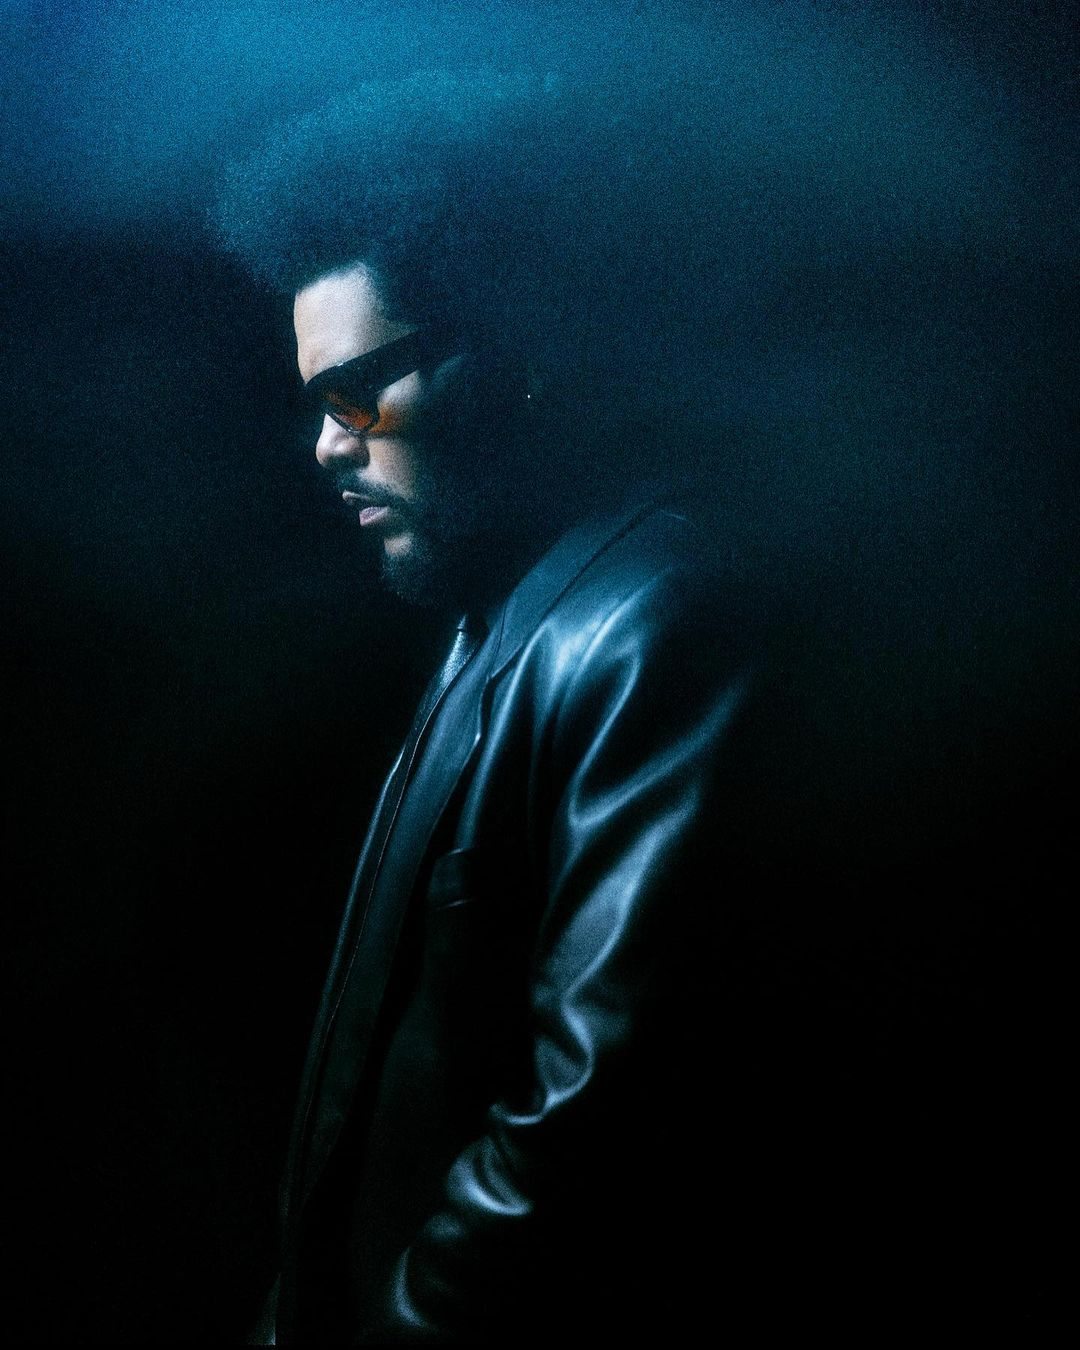 Photographie du chanteur The Weeknd issue de son compte Instagram.